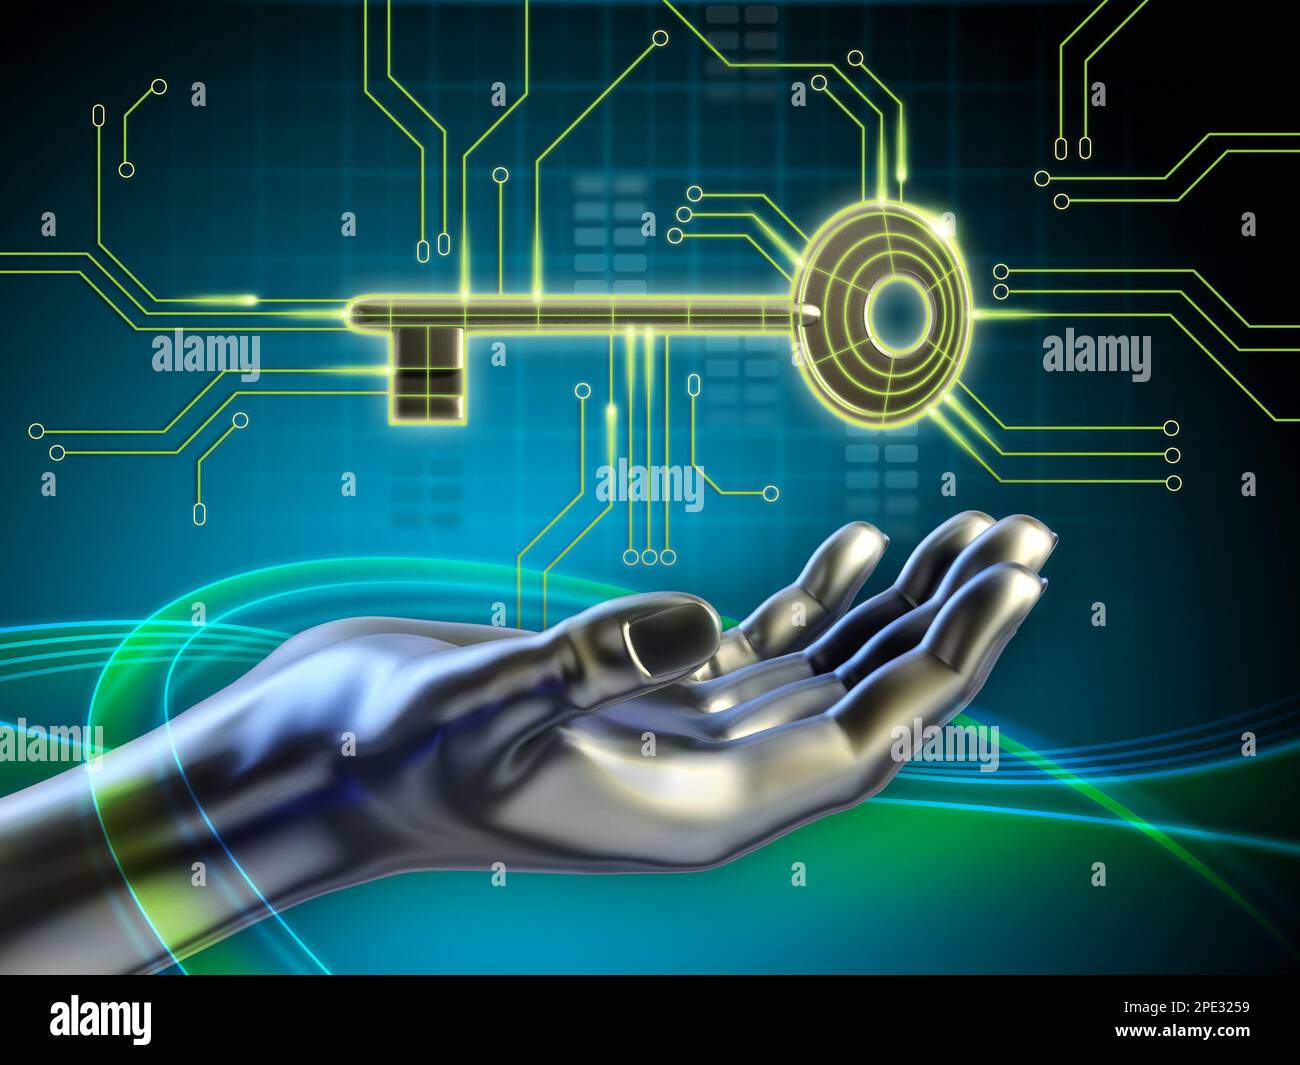 Ein Schlüssel, der mit einigen Schaltkreisen verbunden ist, und eine android-Hand, die danach greift. Digitale Illustration. Stockfoto